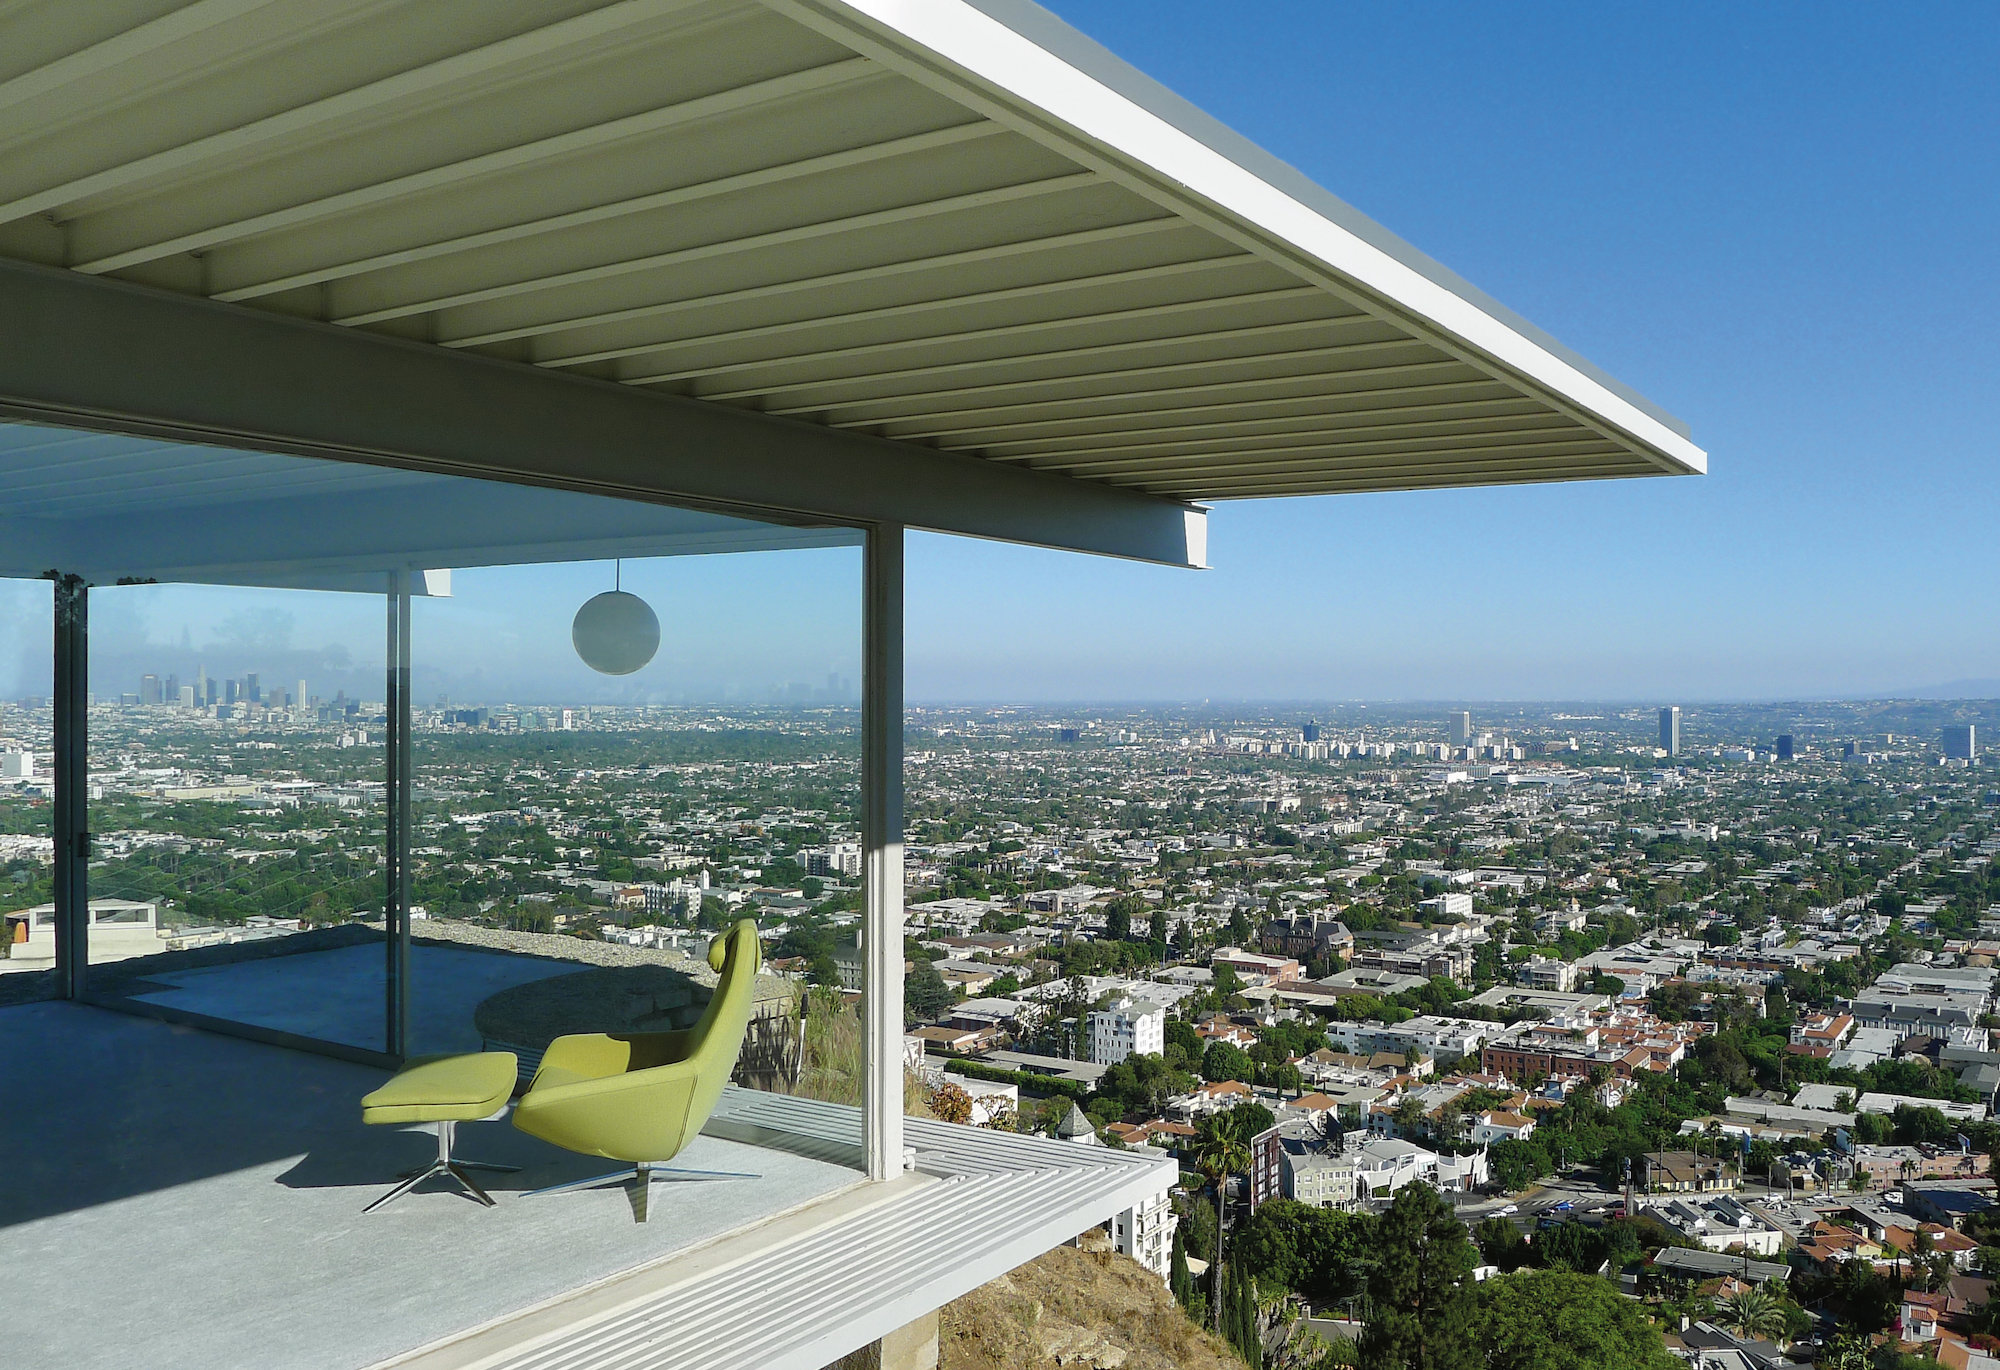 Stahl House en Los Ángeles, de Pierre Koenig (1960)